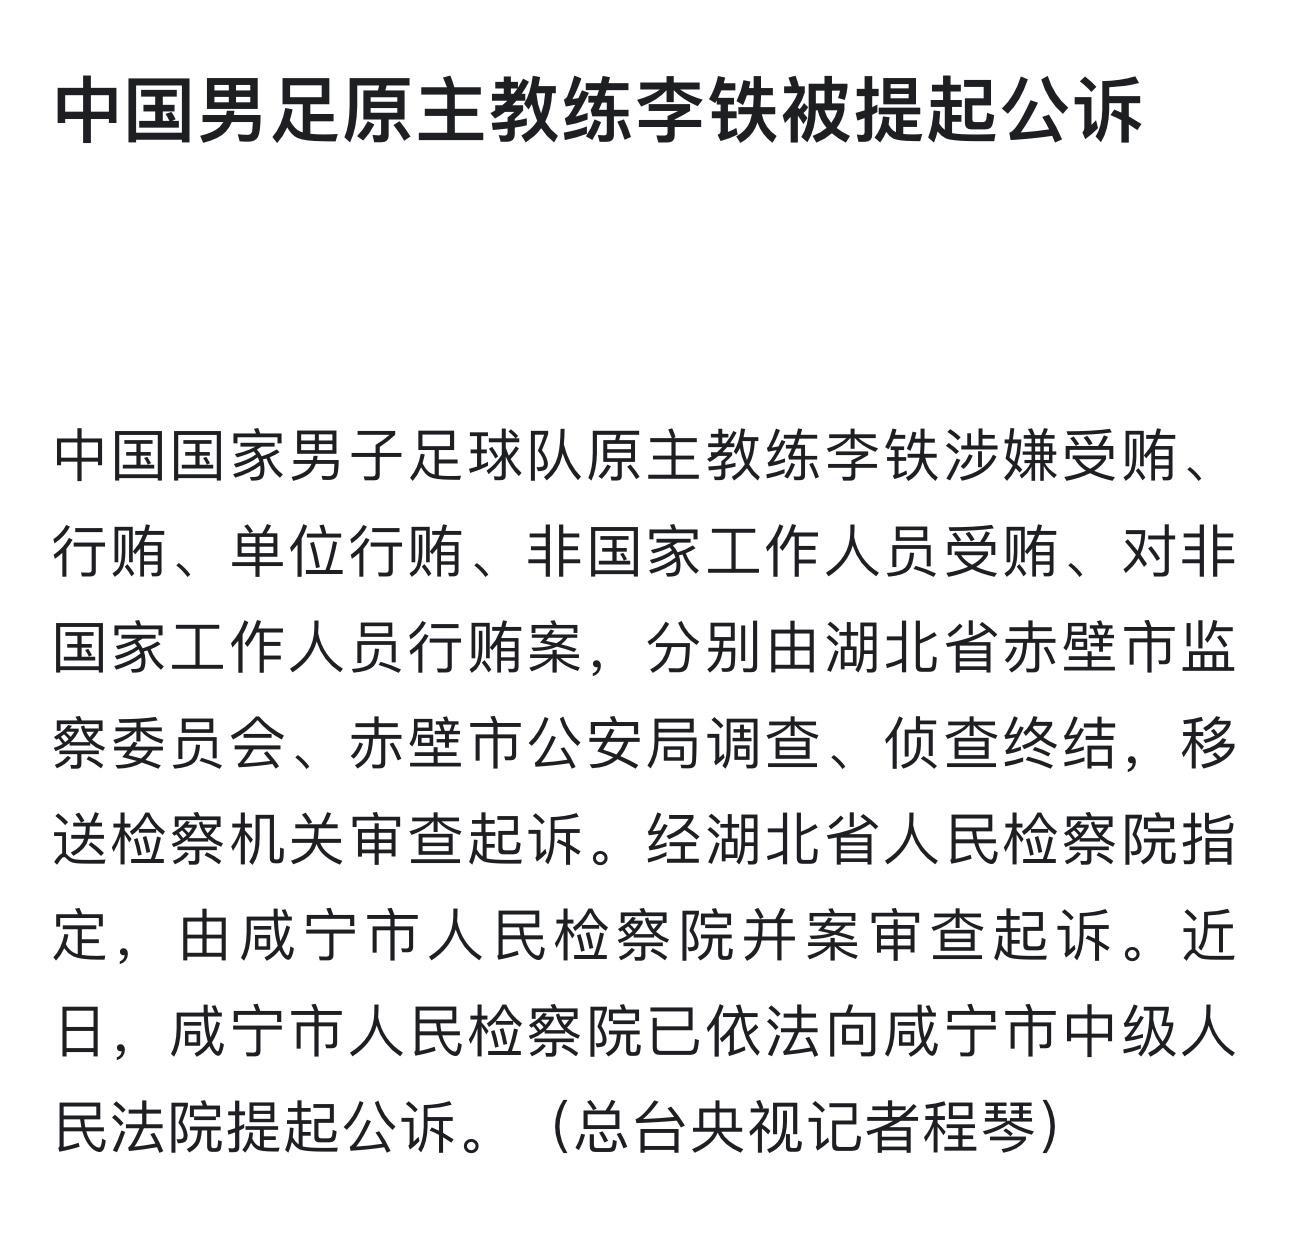 中国男足原主教练李铁被提起公诉，主要罪名是受贿、行贿。你们觉得他会被判多少年[d